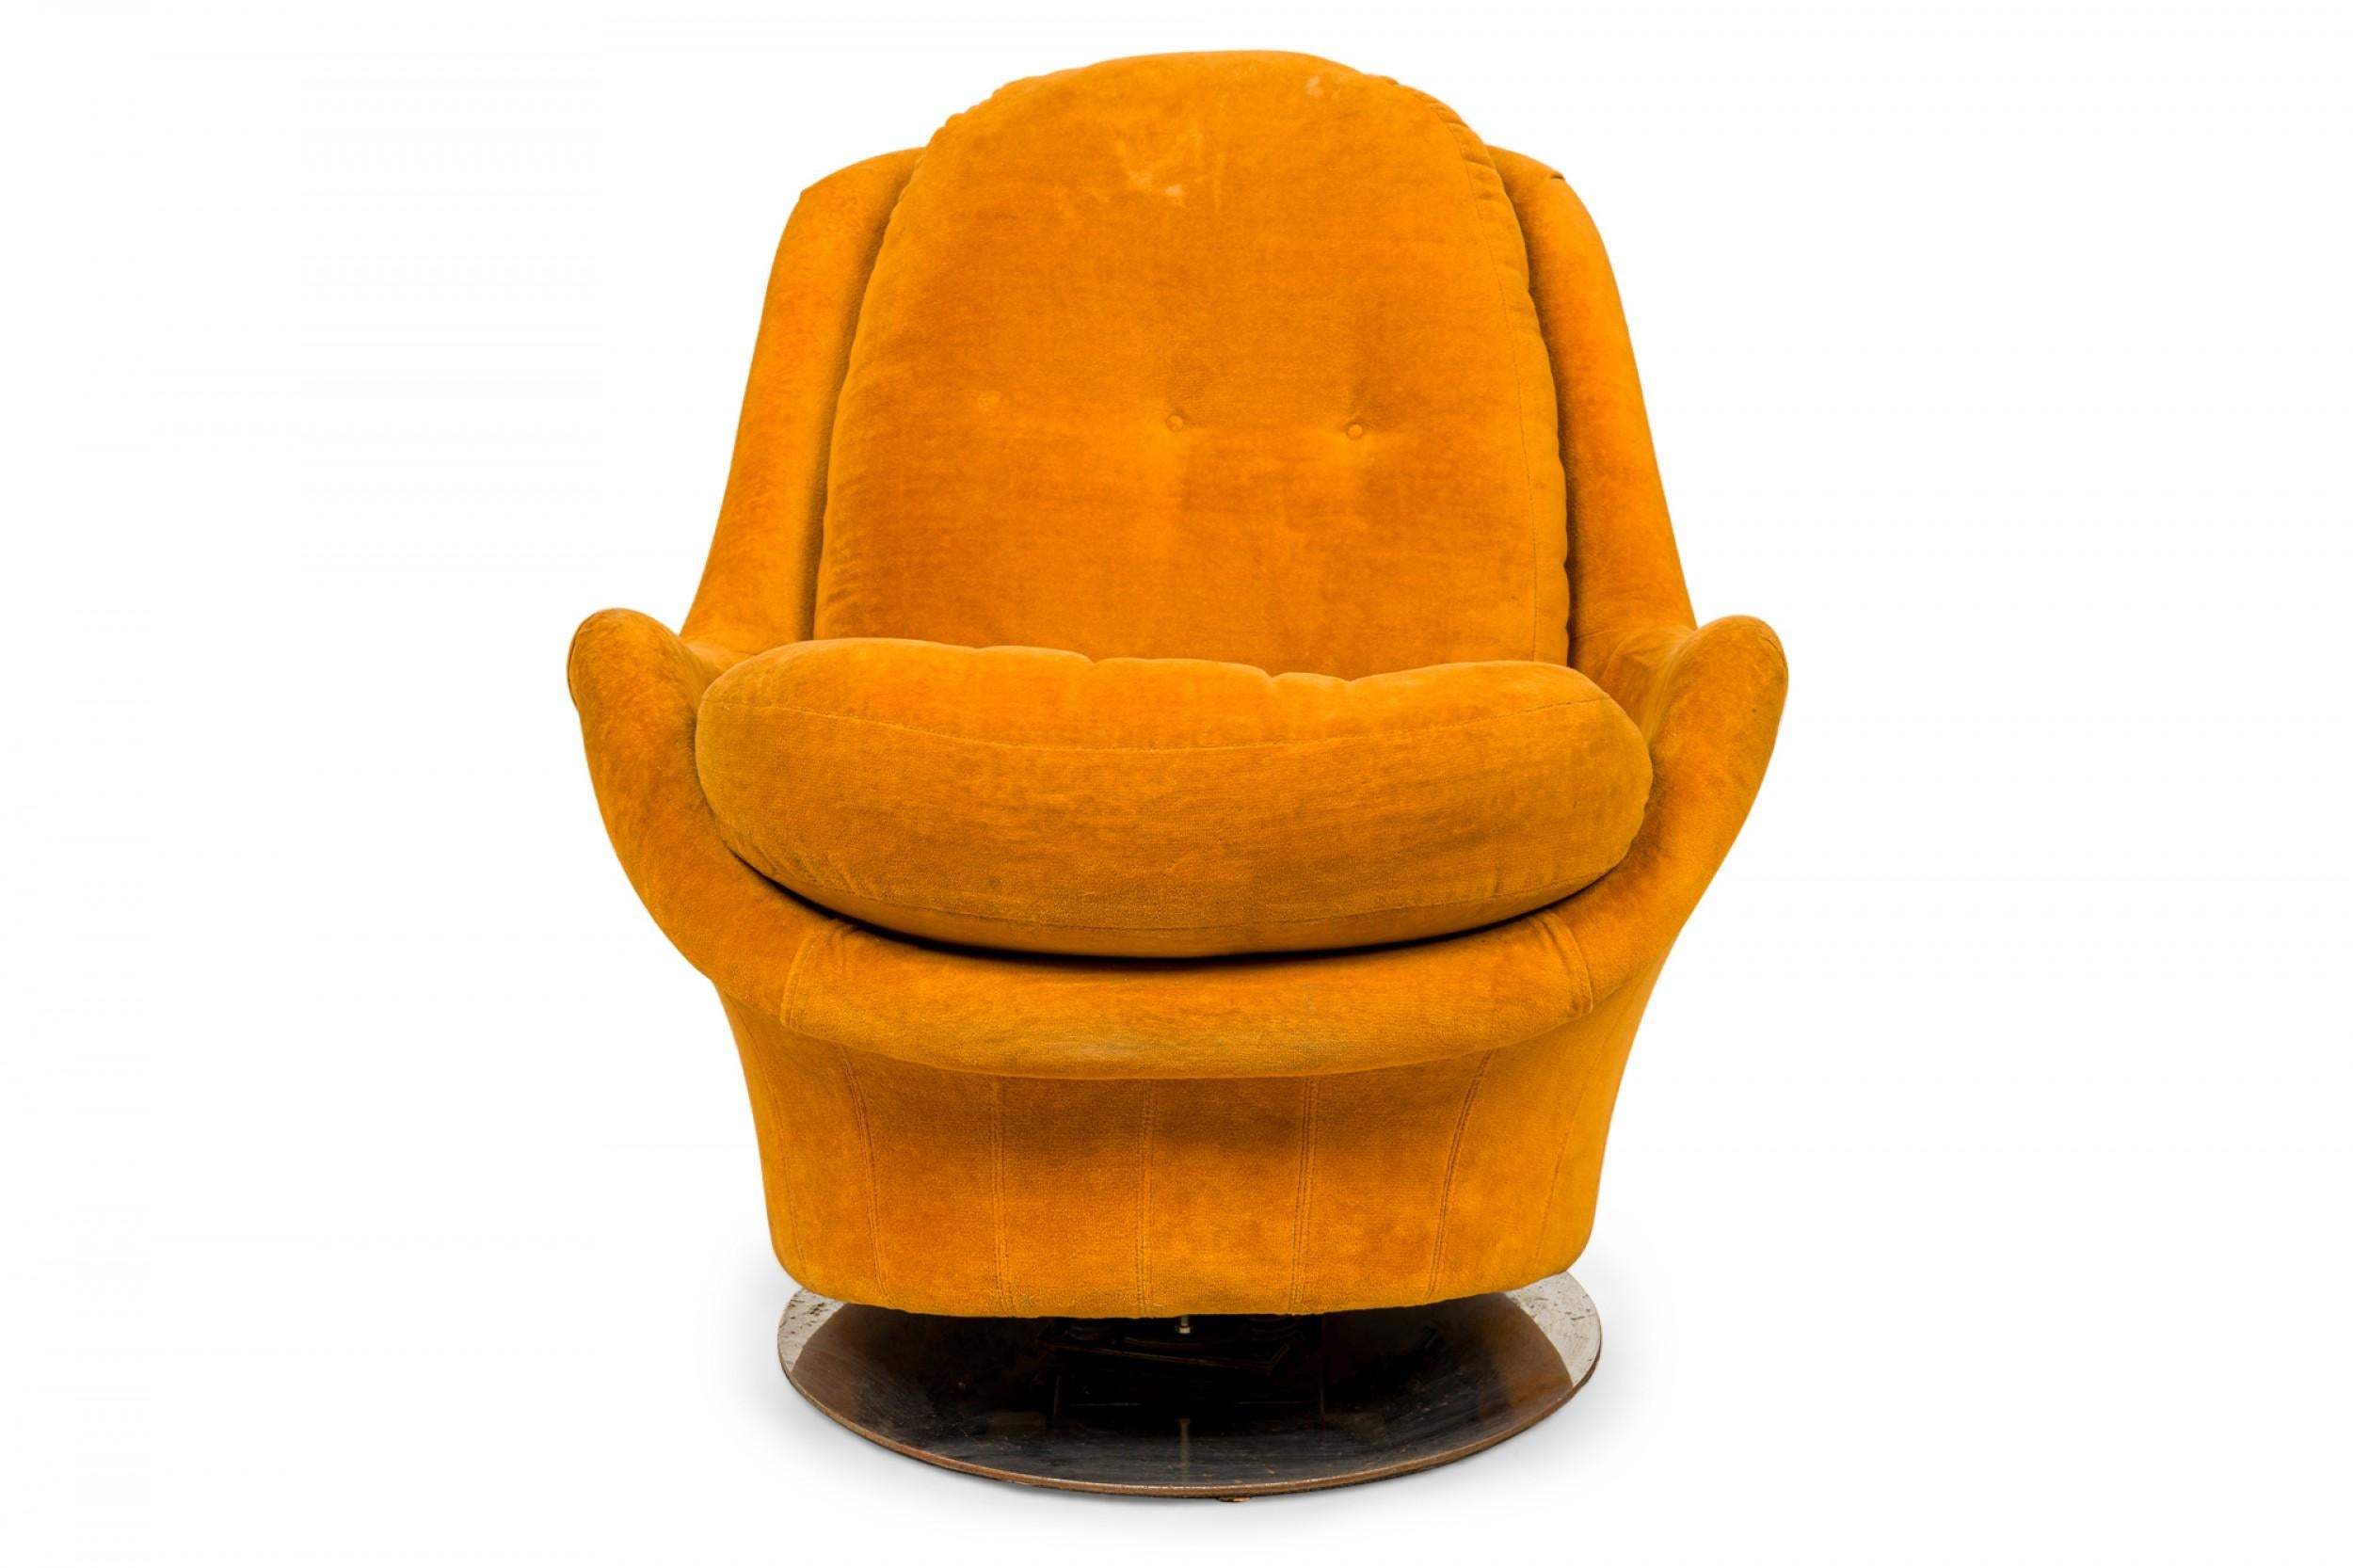 Fauteuil de salon américain de style Space Age, pivotant et inclinable, tapissé de velours orange doré avec des boutons sur le coussin du dossier, reposant sur une base circulaire en métal. (MILO BAUGHMAN POUR THAYER COGGIN).
 